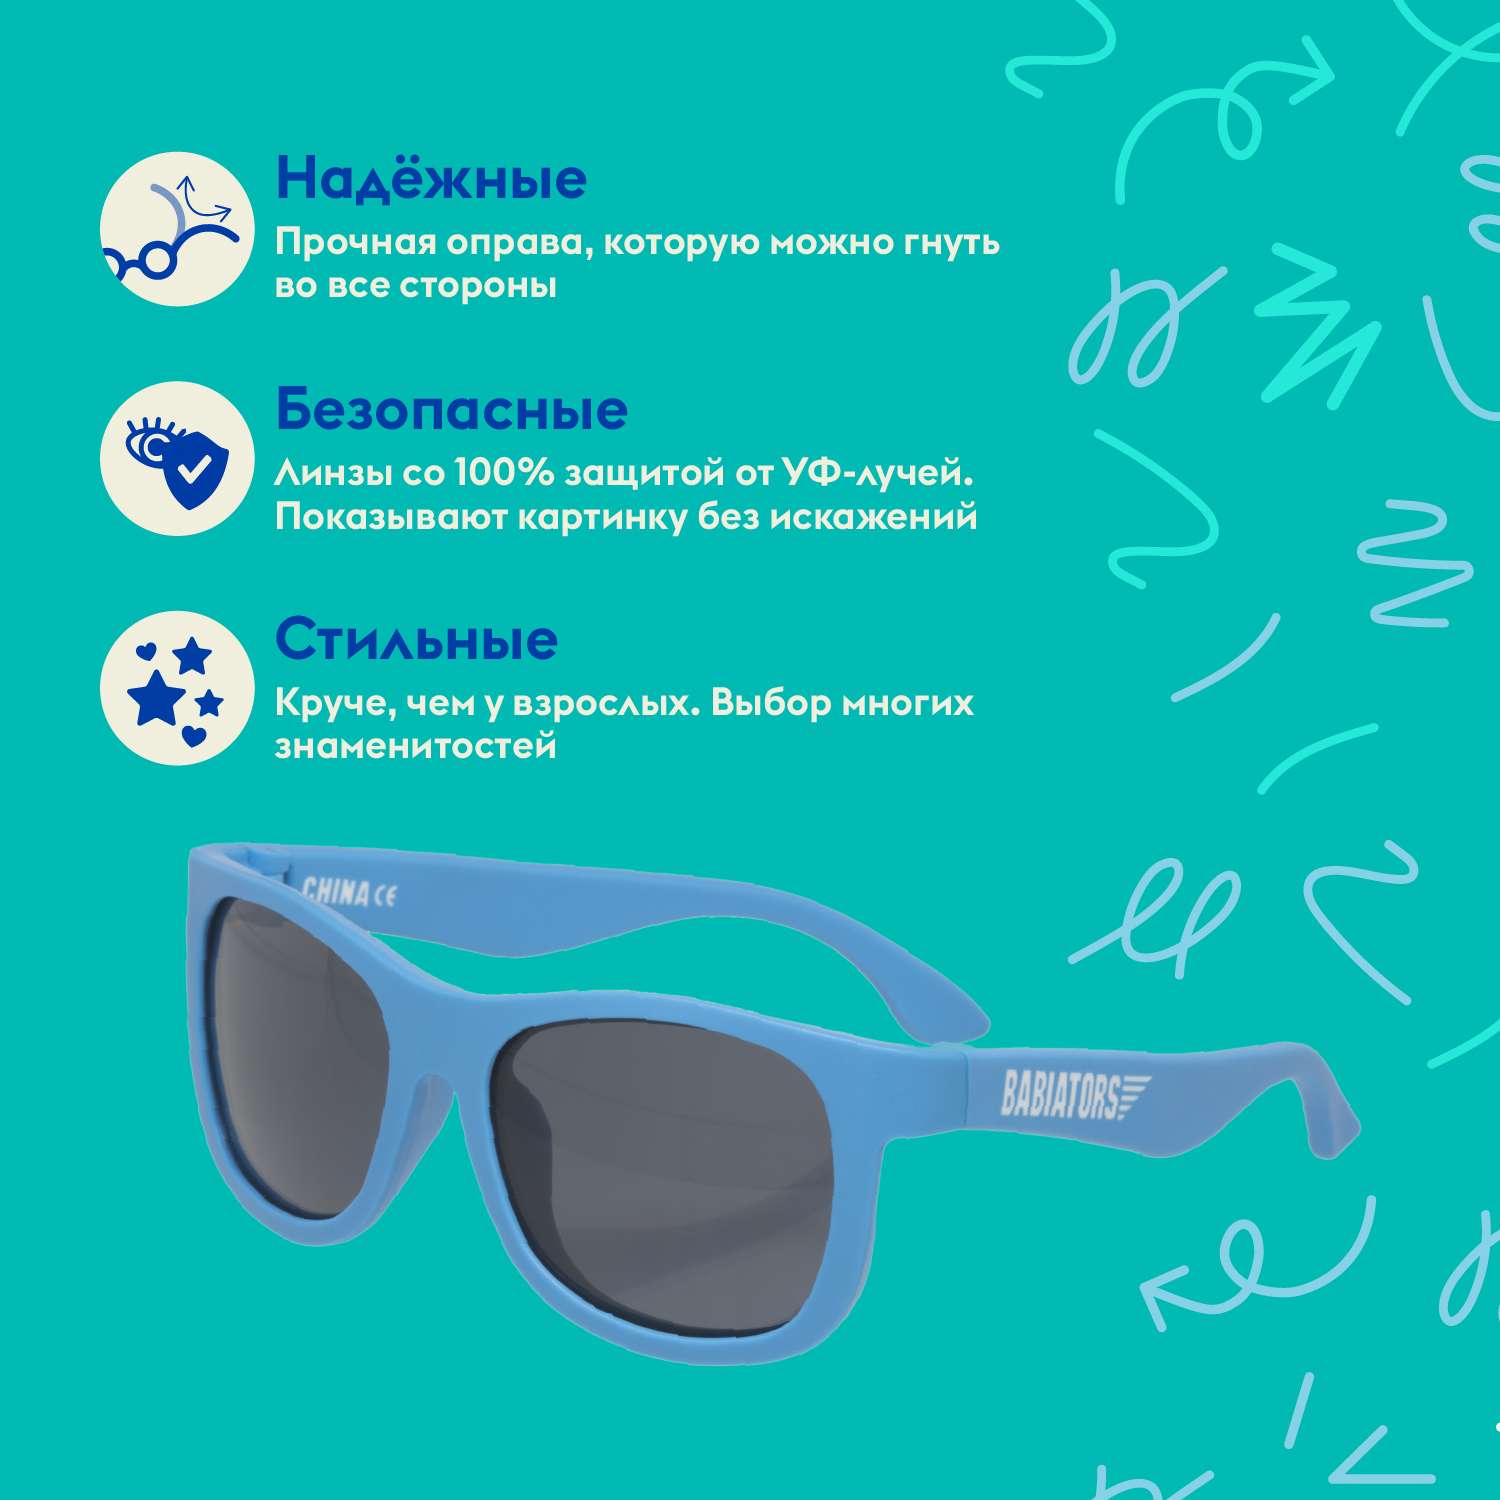 Солнцезащитные очки Babiators Navigator Страстно-синий 0-2 NAV-003 - фото 2